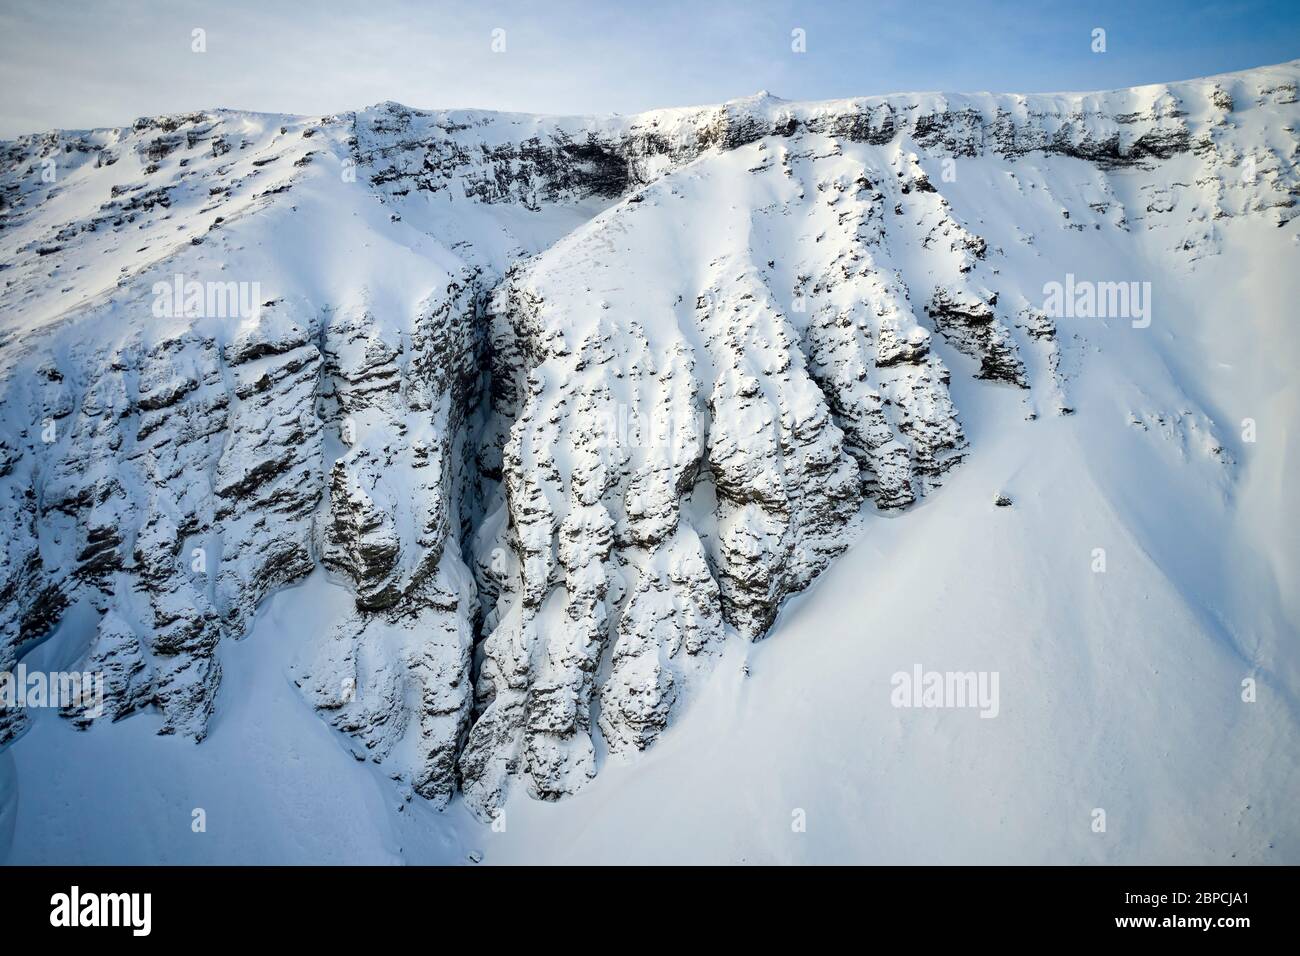 Vista aérea de la cordillera con pendientes escarpadas cubiertas de nieve en Islandia Foto de stock